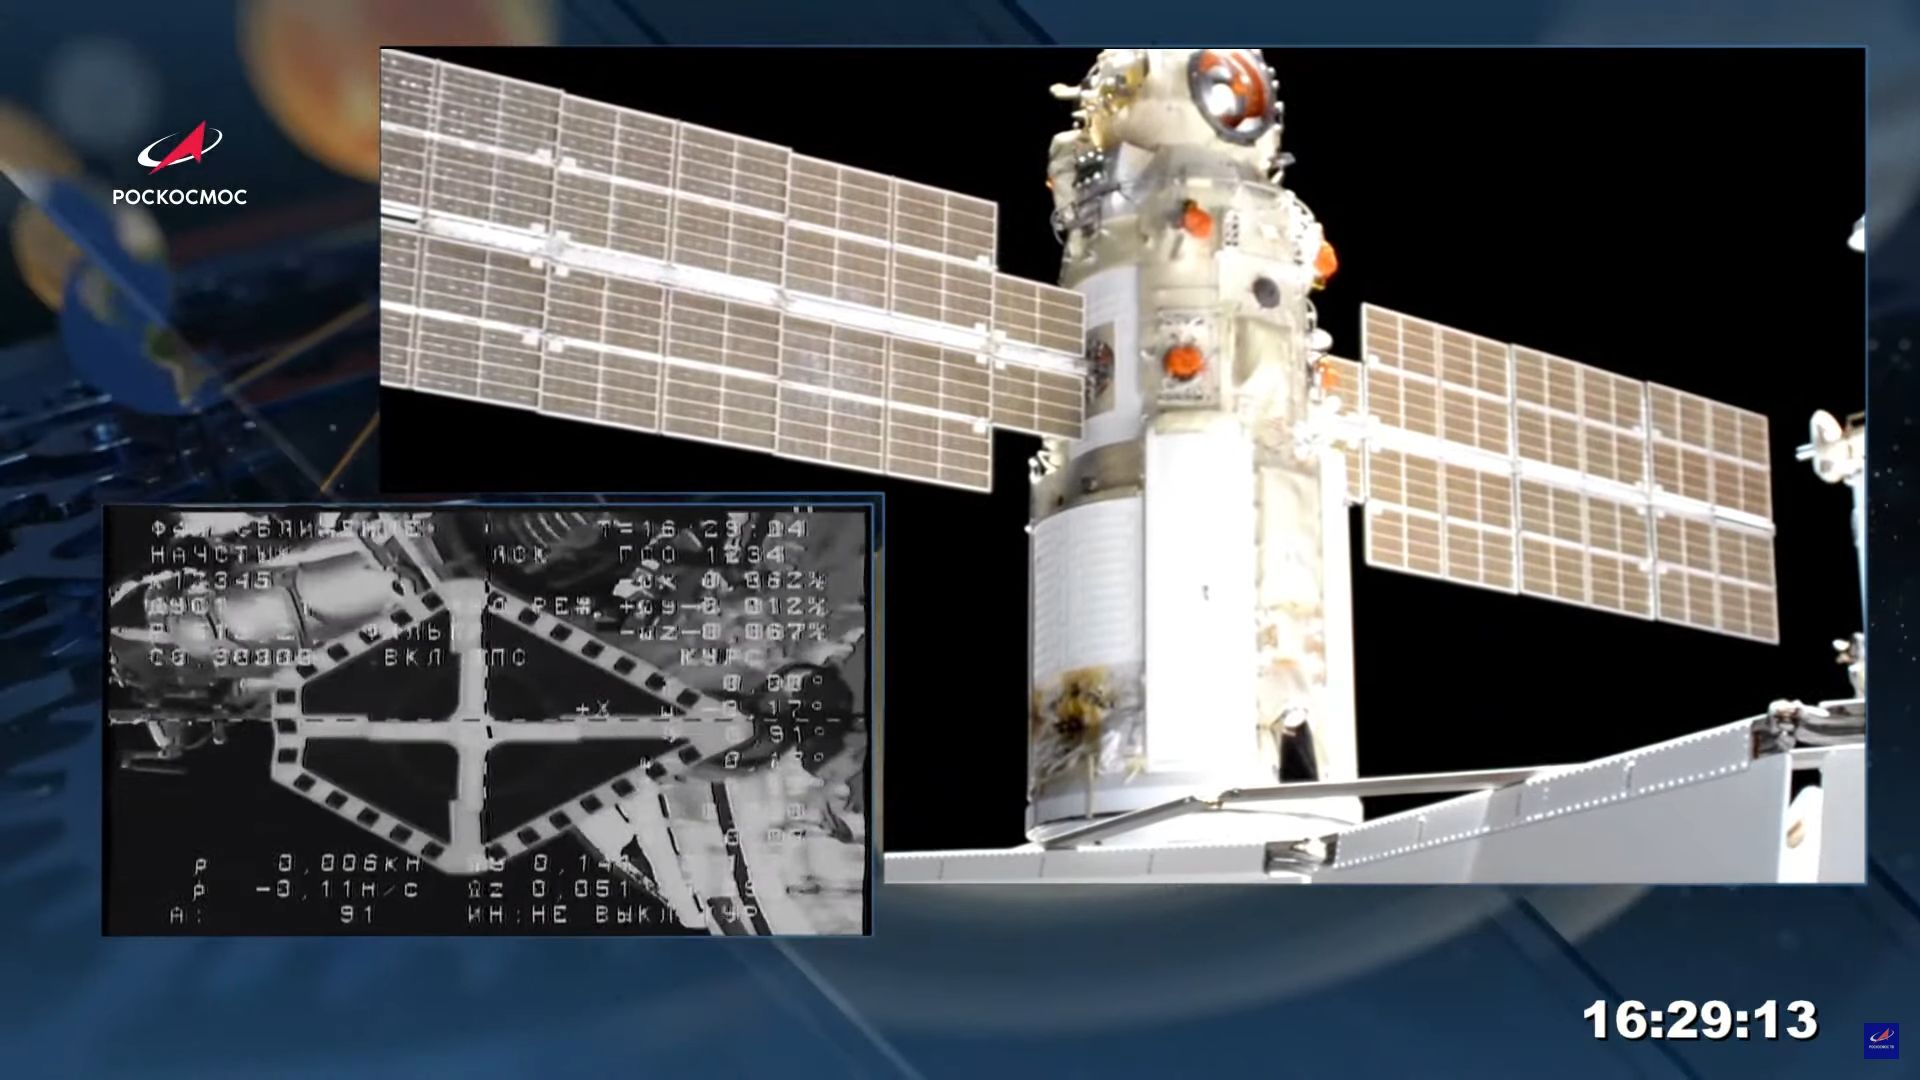 Модул "Наука" се скачи успешно с МКС